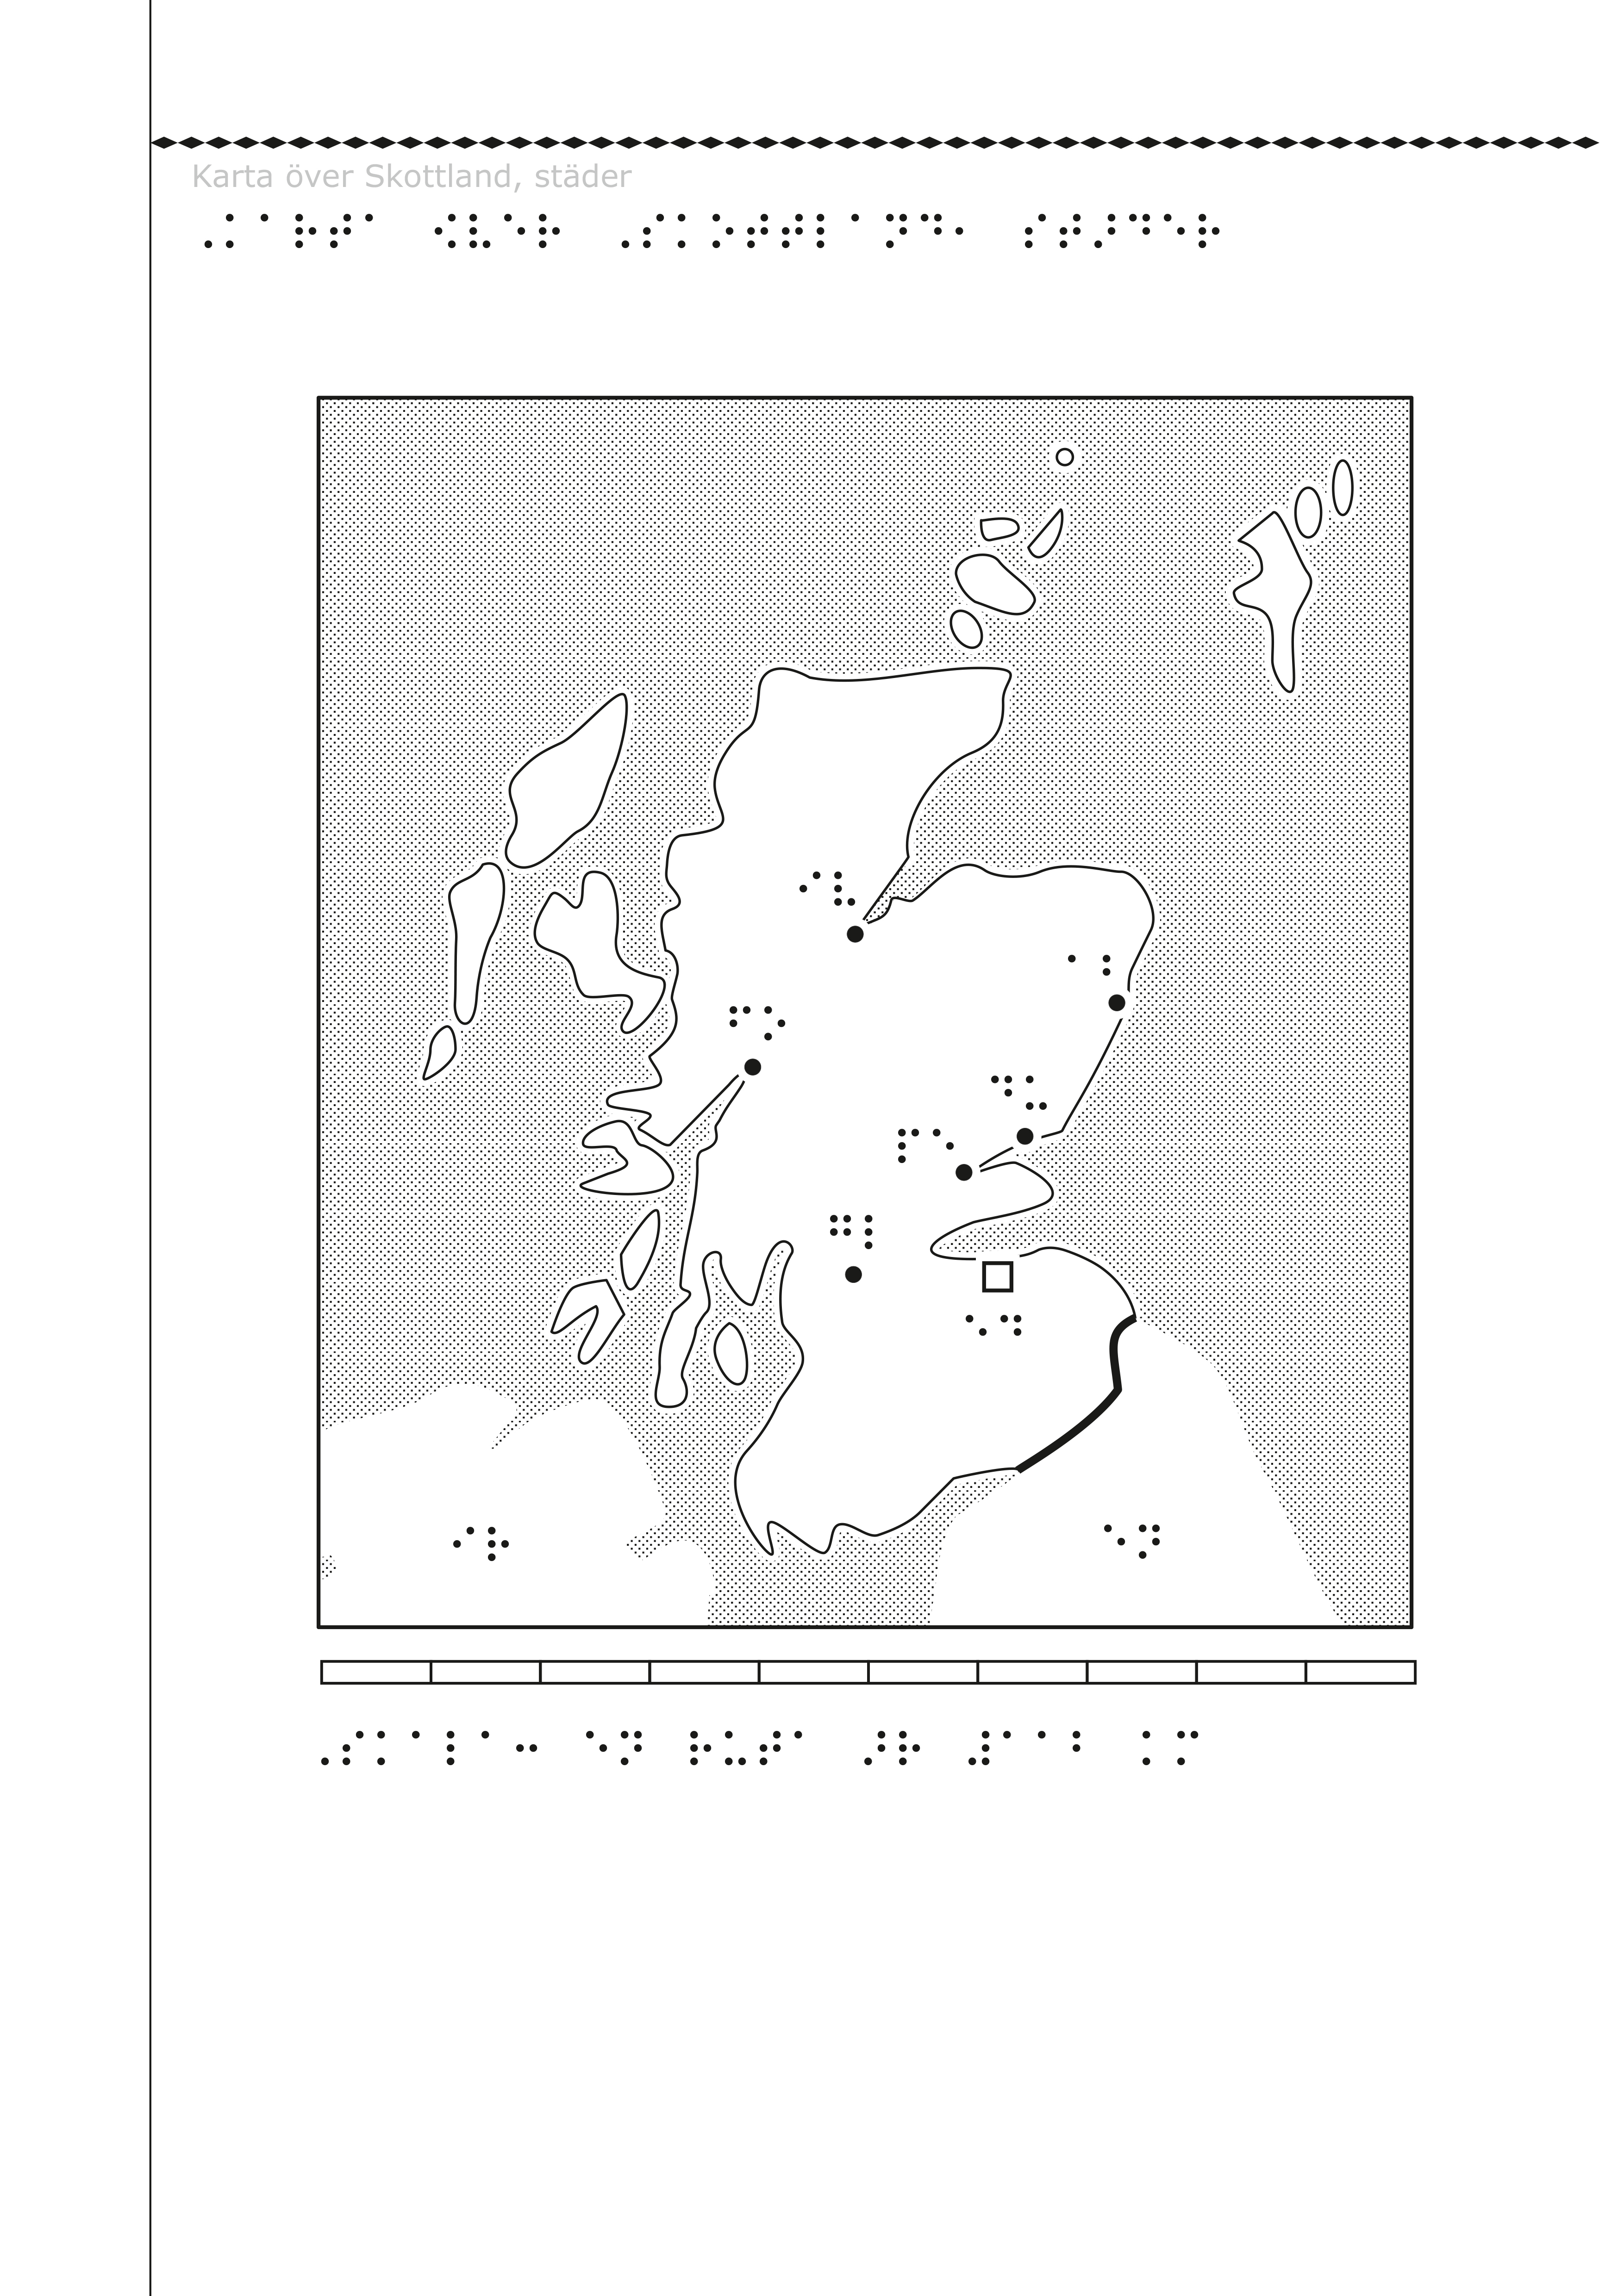 Karta över Skottland i svällpapper.